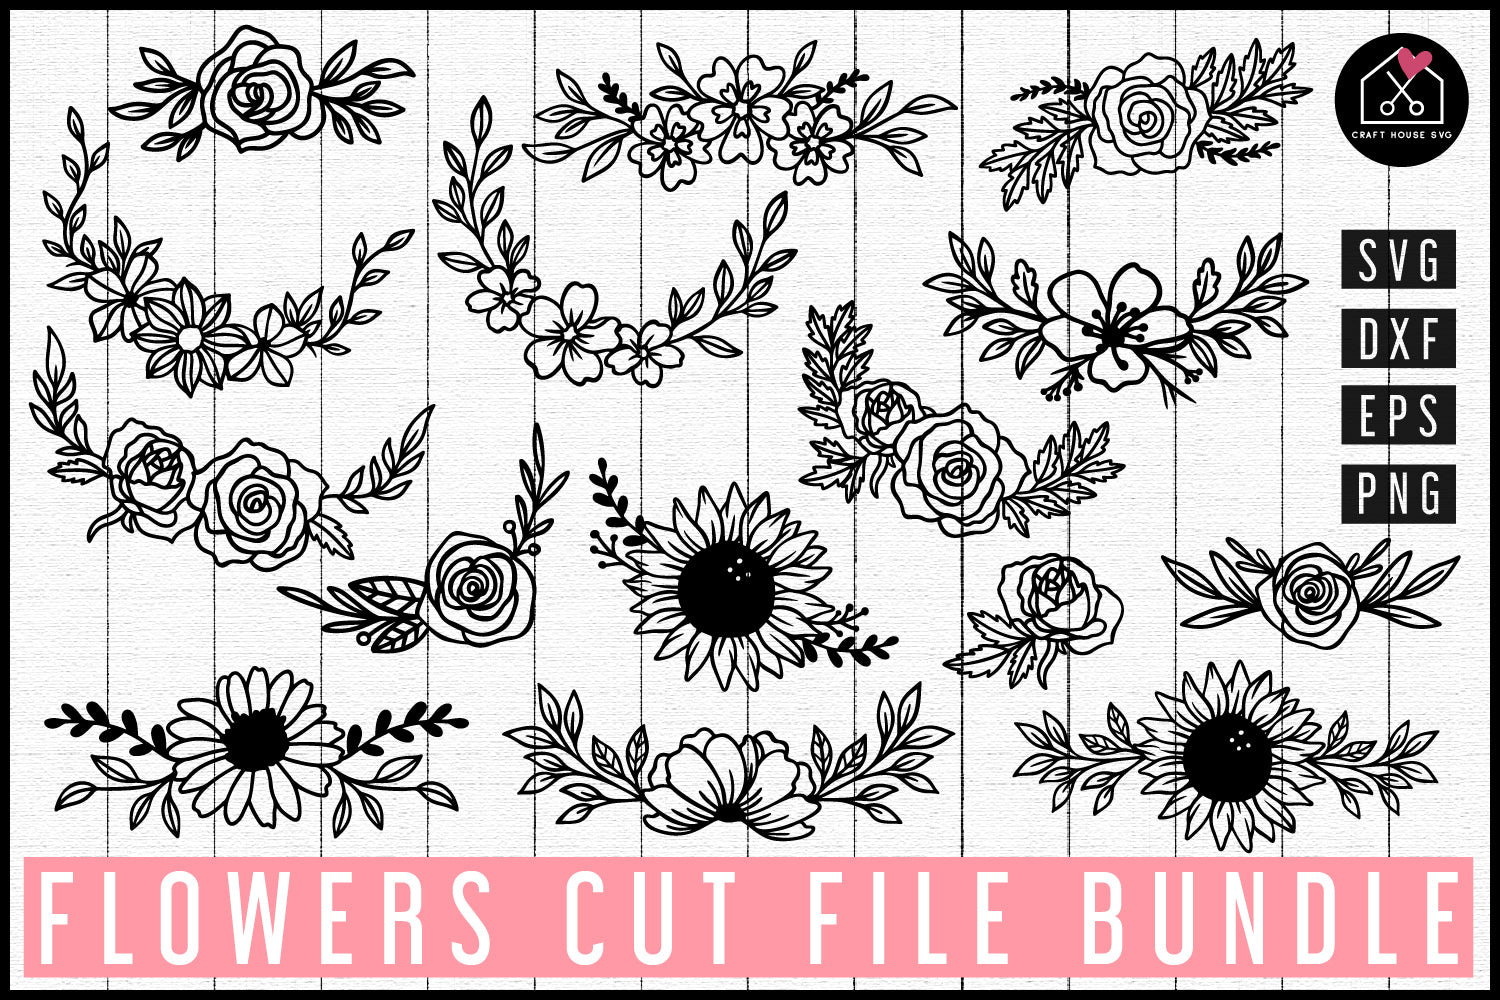 Flower SVG file - Craft House SVG